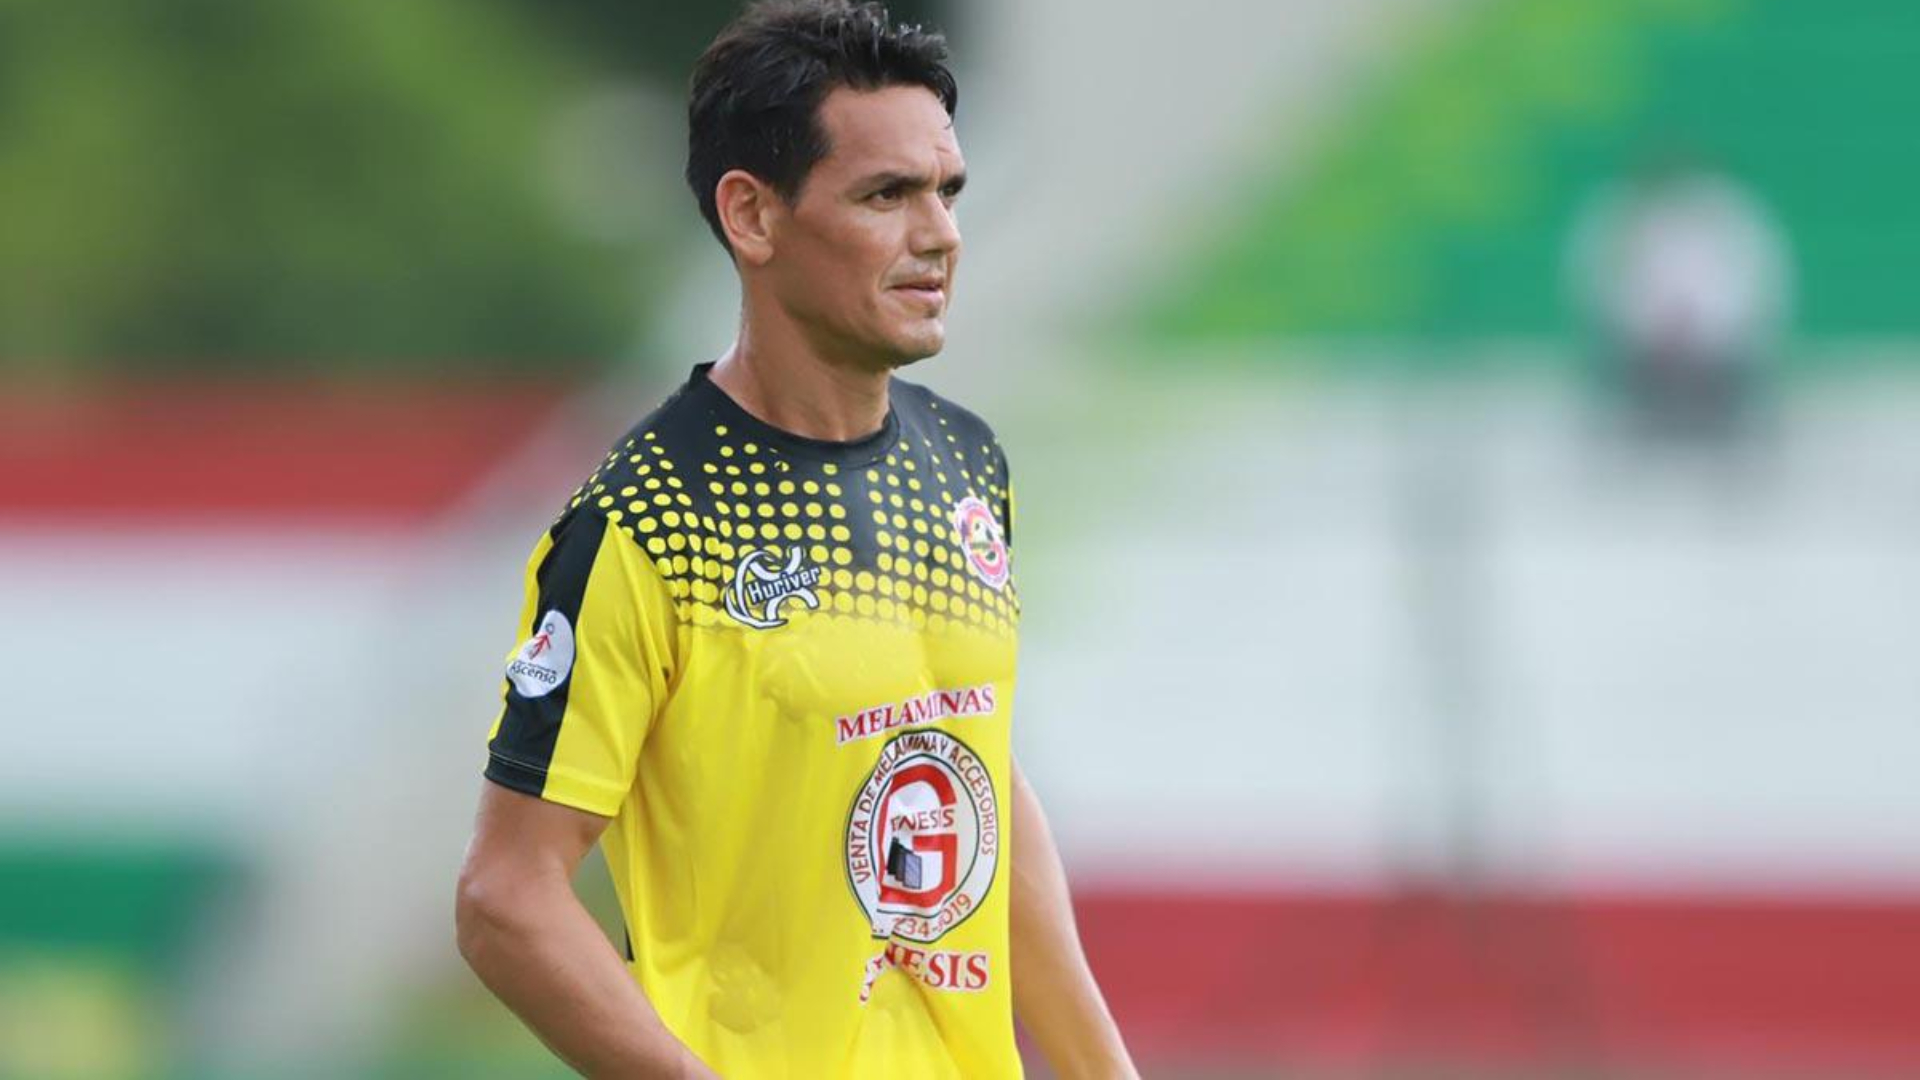 El delantero paraguayo Roberto Moreira ha renovado su contrato con el Génesis de Comayagua por un año más, asegurando su permanencia en el club hasta junio de 2025.